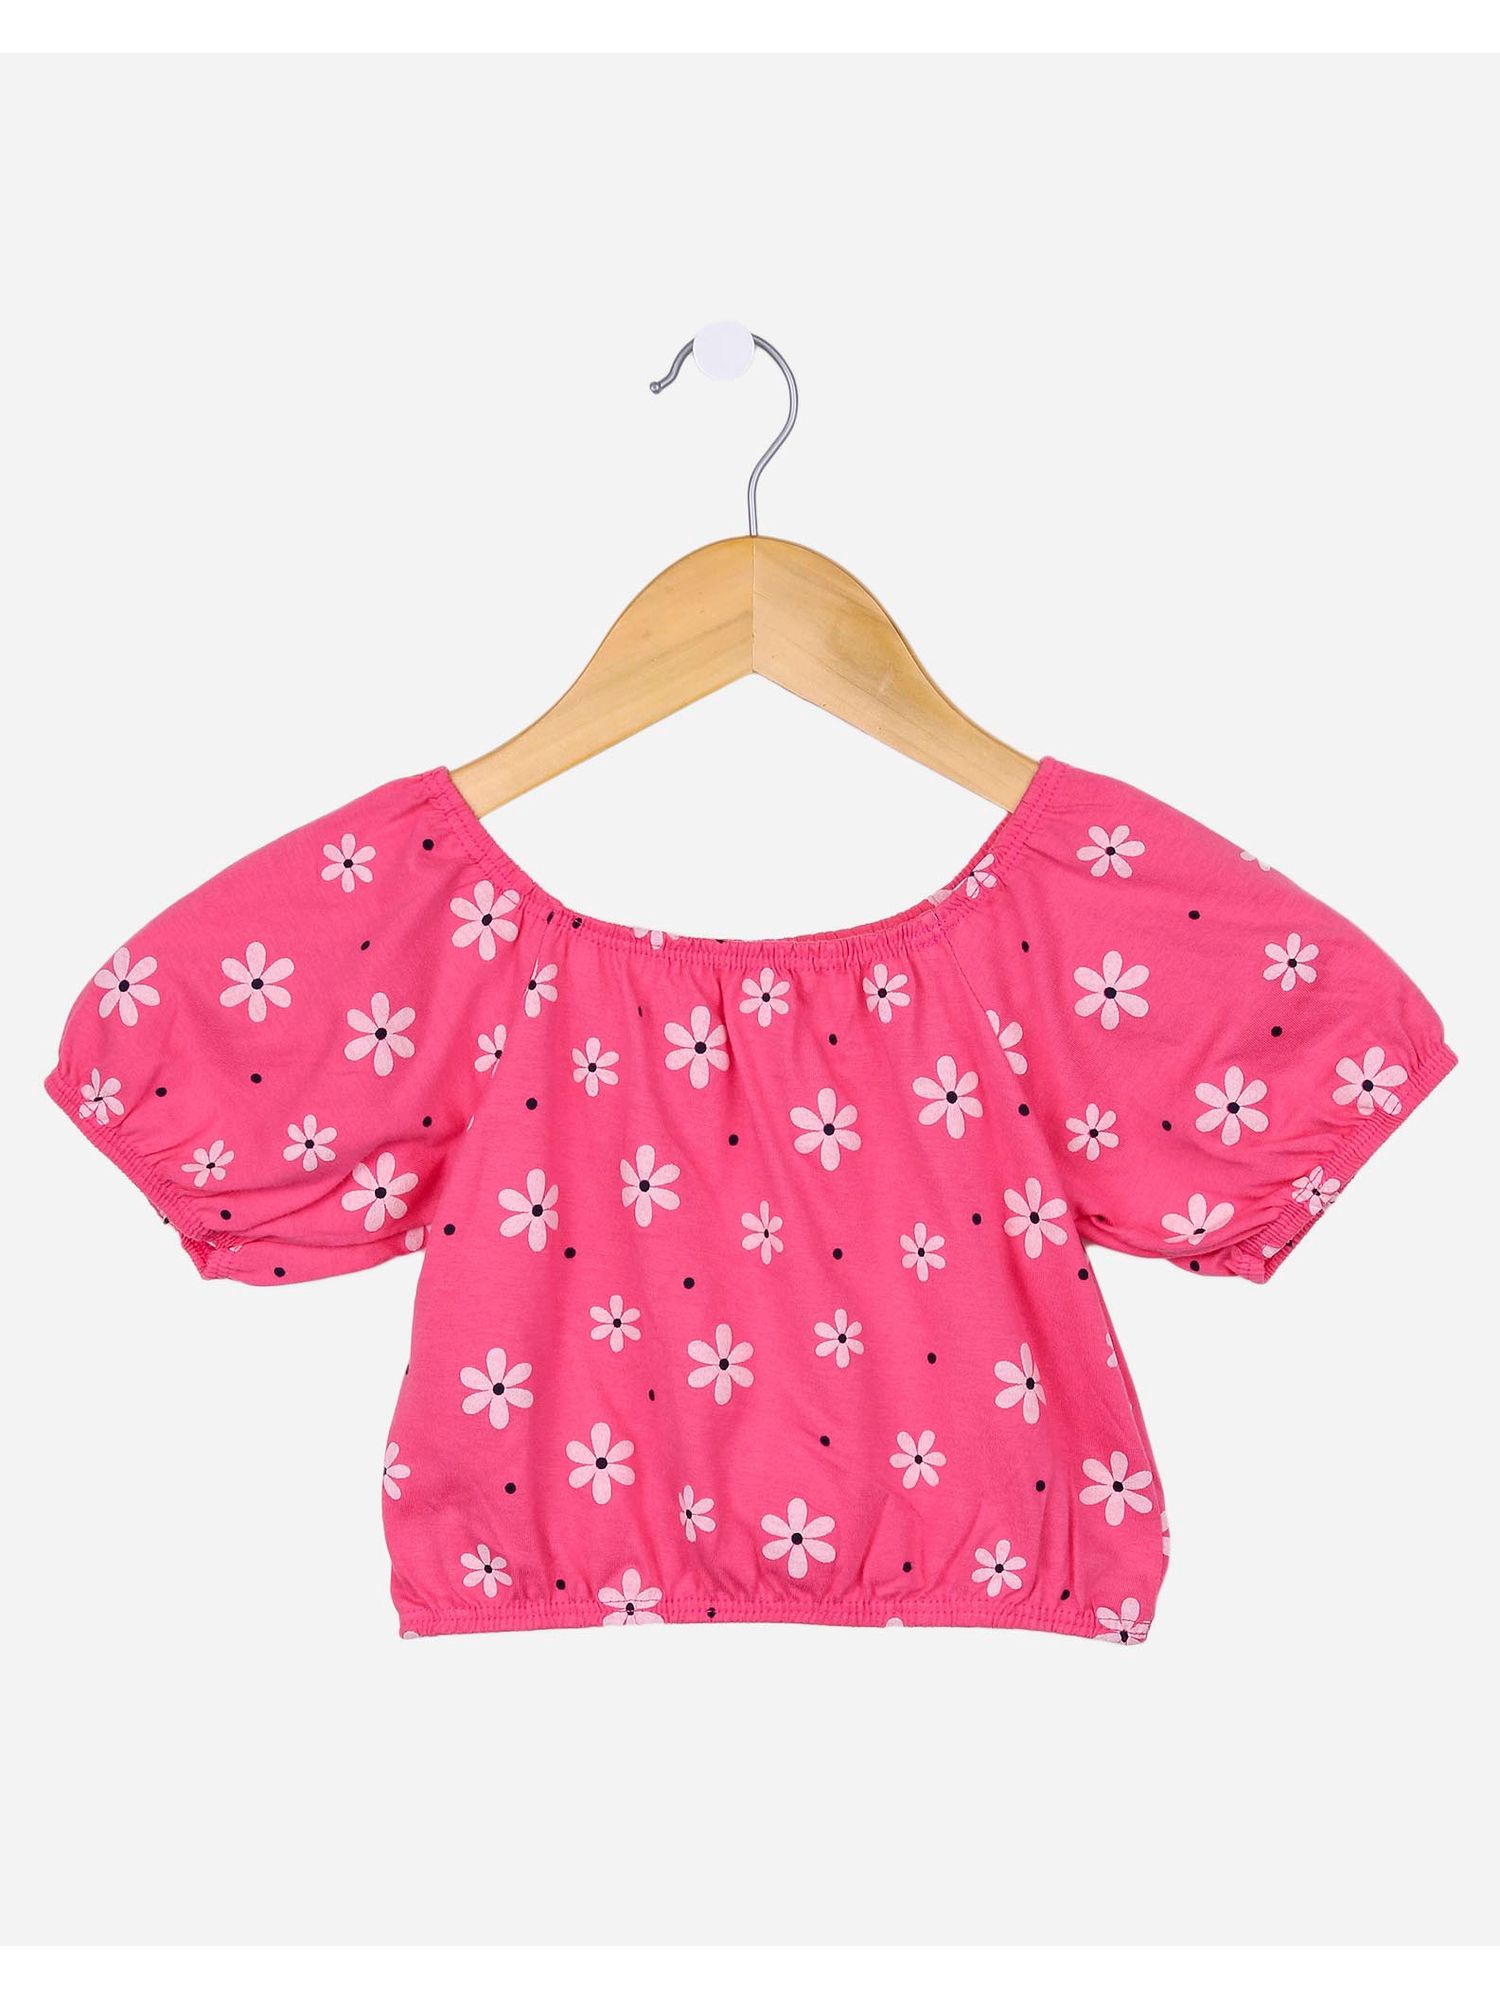 Moda rosa topos camisa vestido padrão de flor saia acessórios